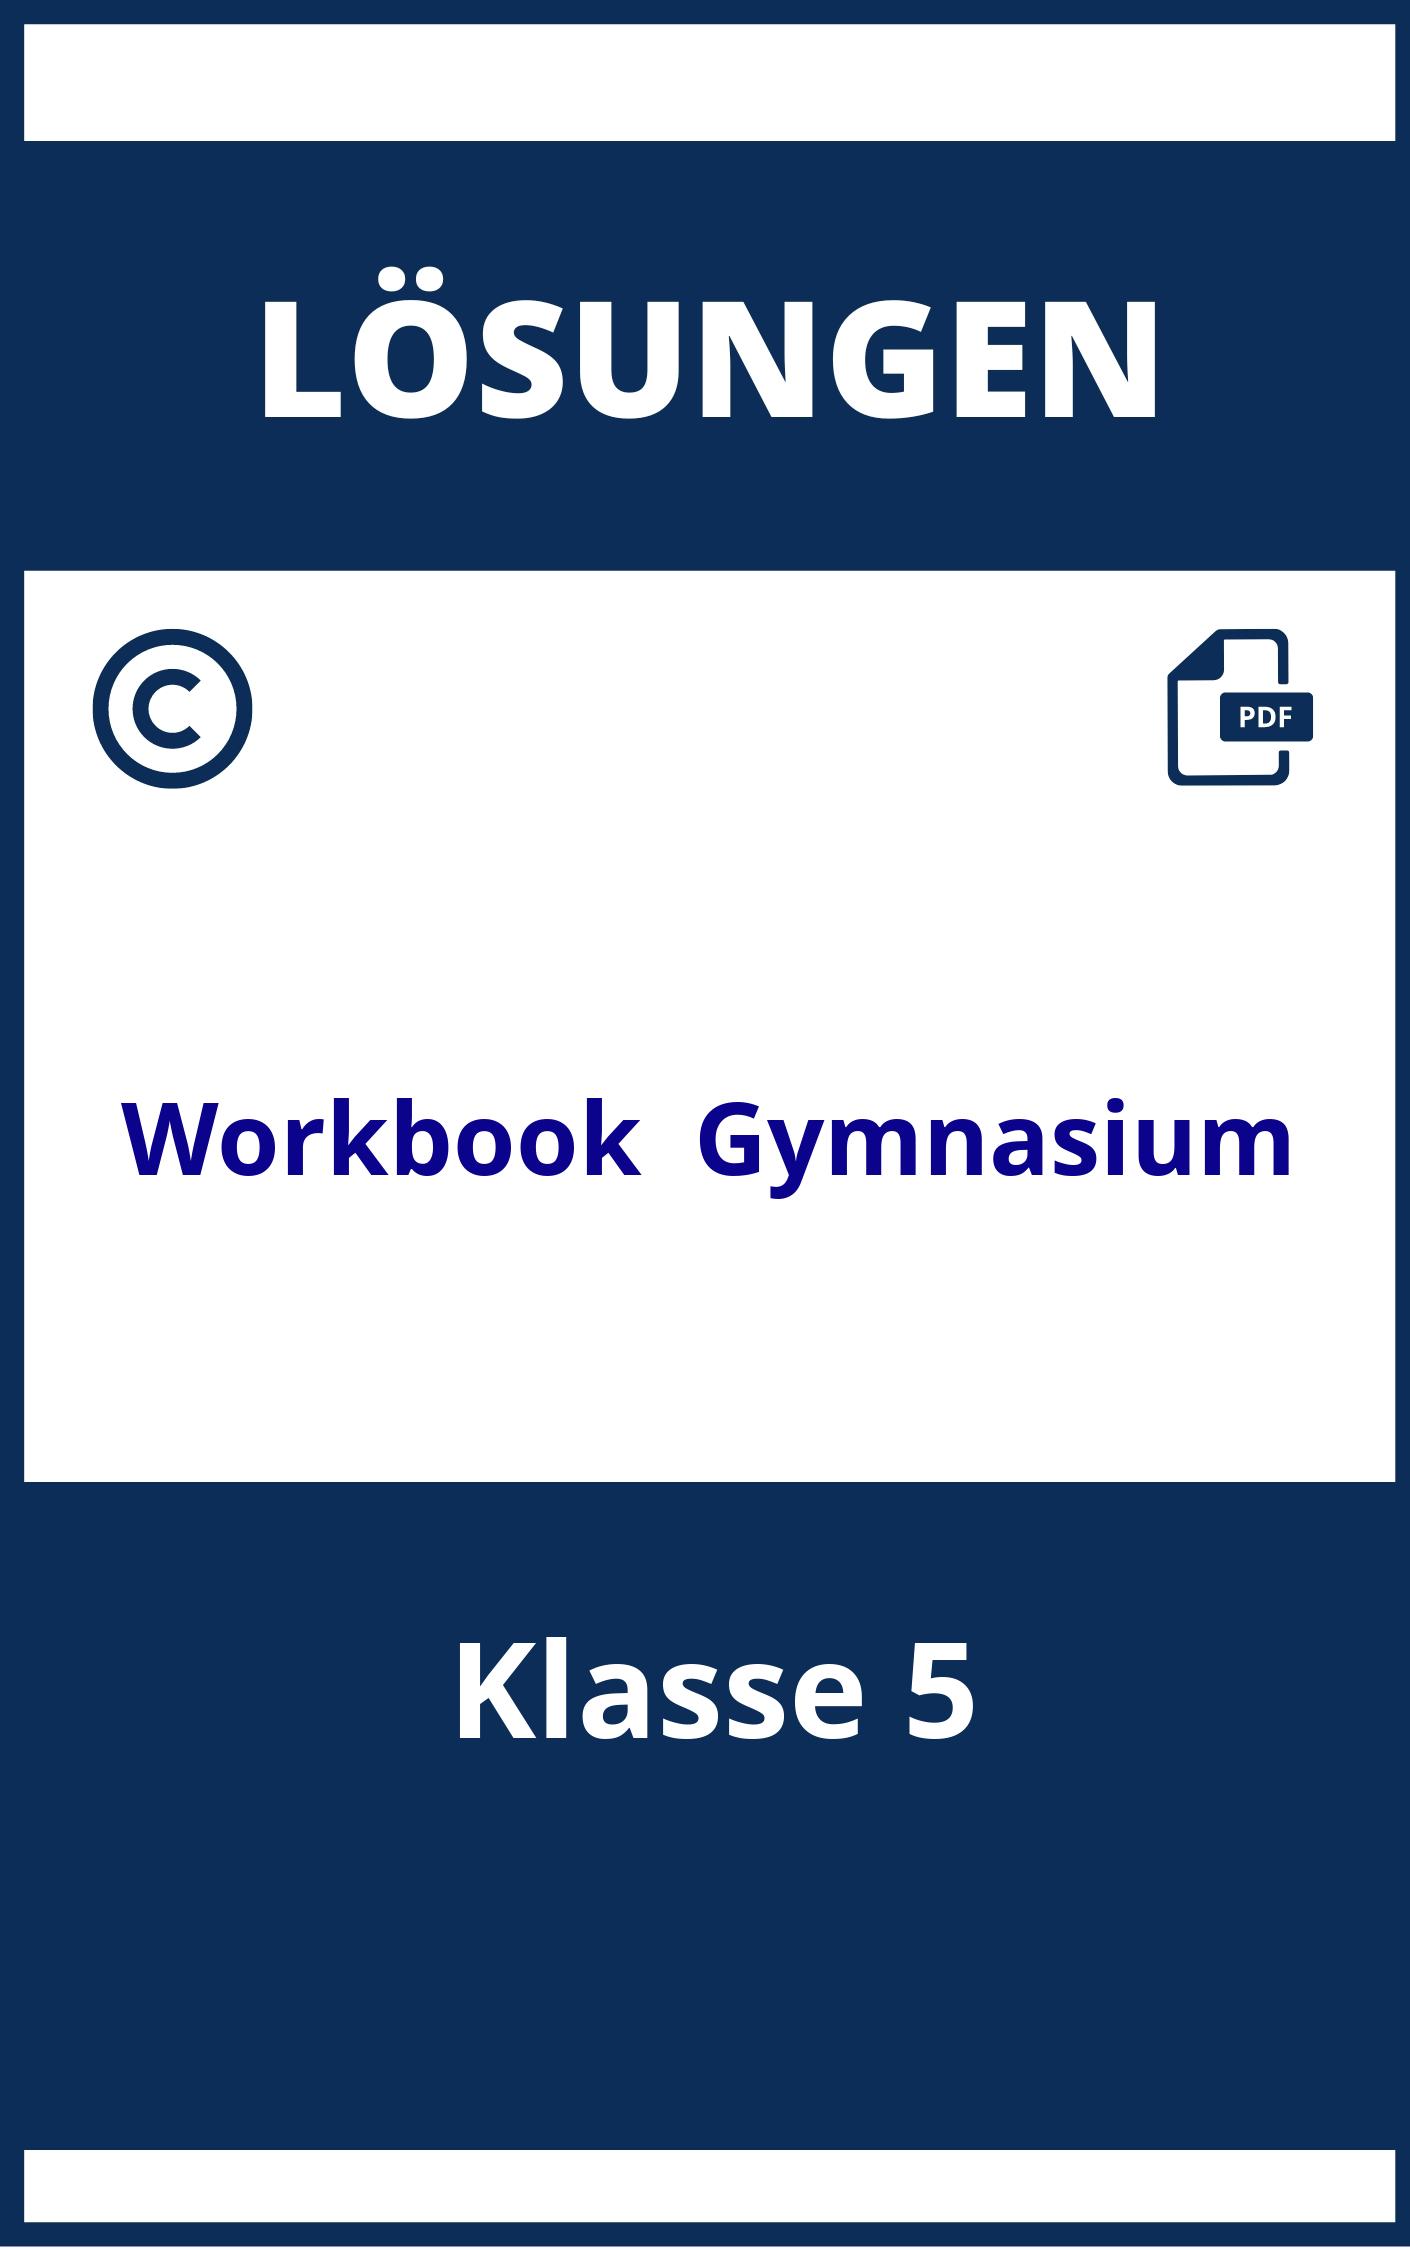 Workbook Lösungen Klasse 5 Gymnasium